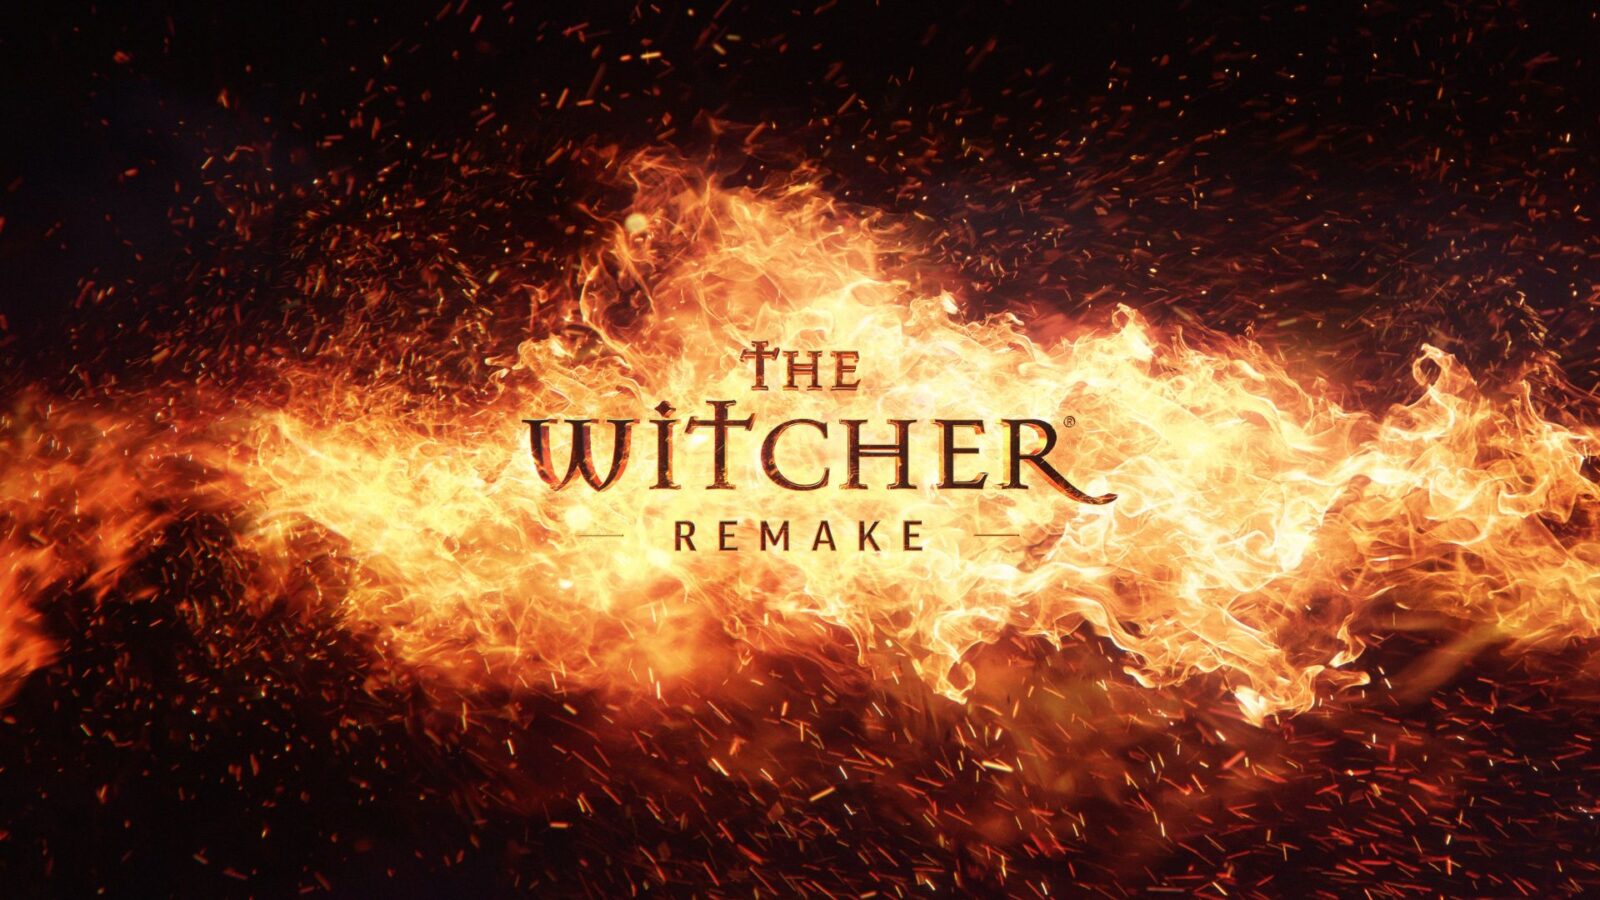 The Witcher Remake | The Witcher | The Witcher Remake จะเป็นเกม Open World เต็มรูปแบบ ต่างจากภาคต้นฉบับ